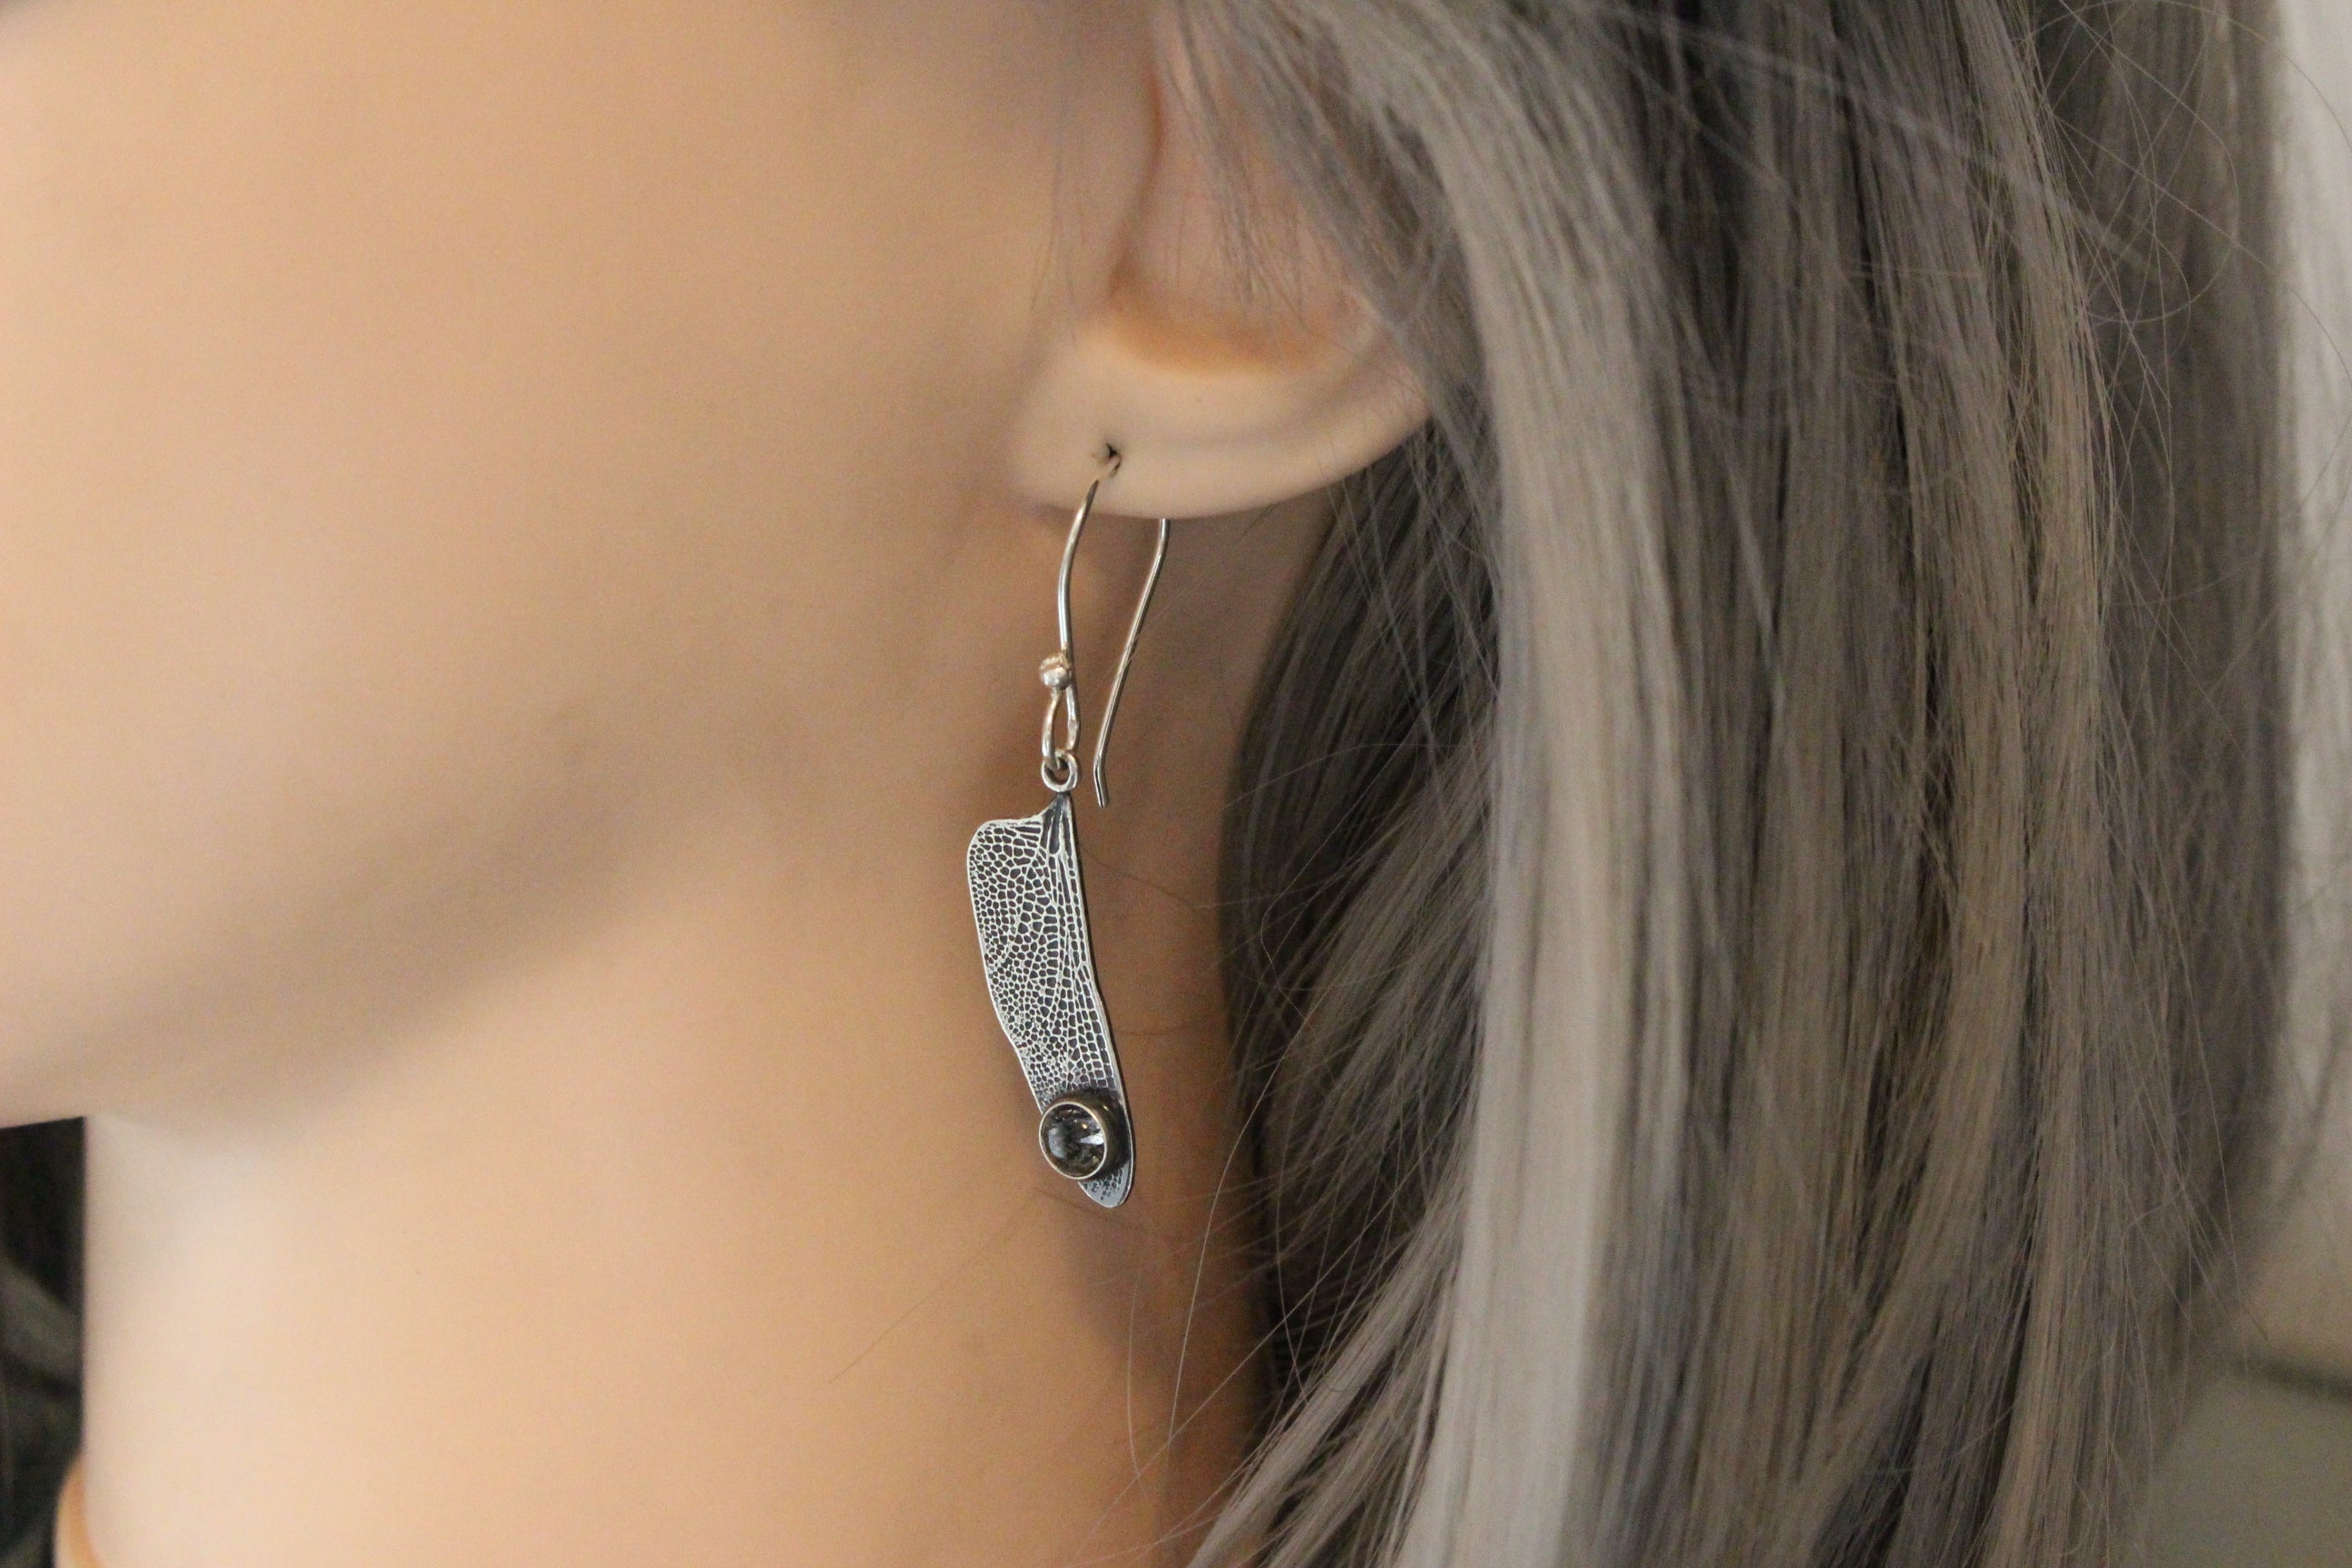 Dragonfly wing earrings